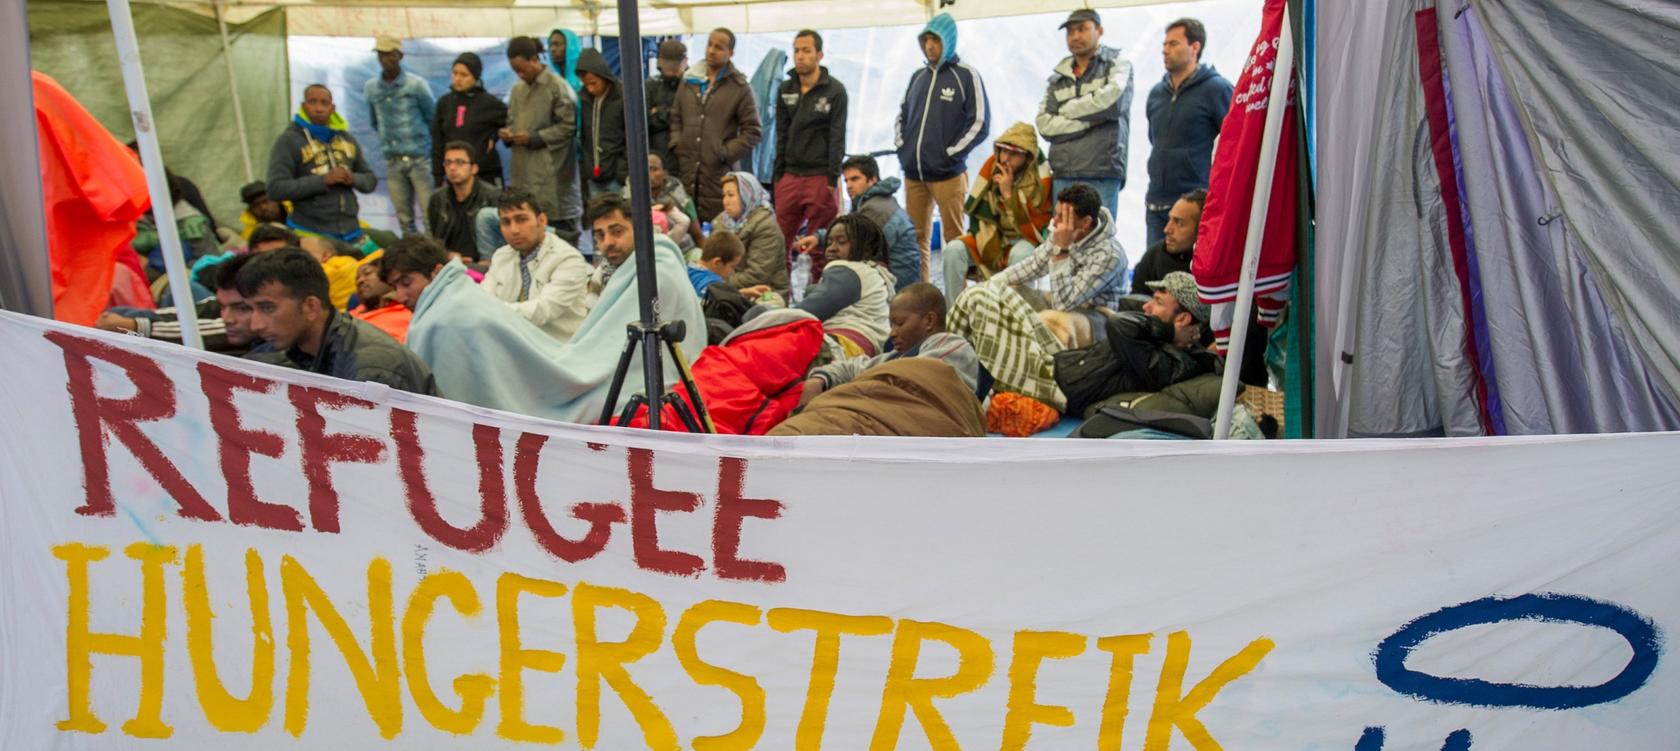 Hungerstreik von Flüchtlingen: Situation spitzt sich zu